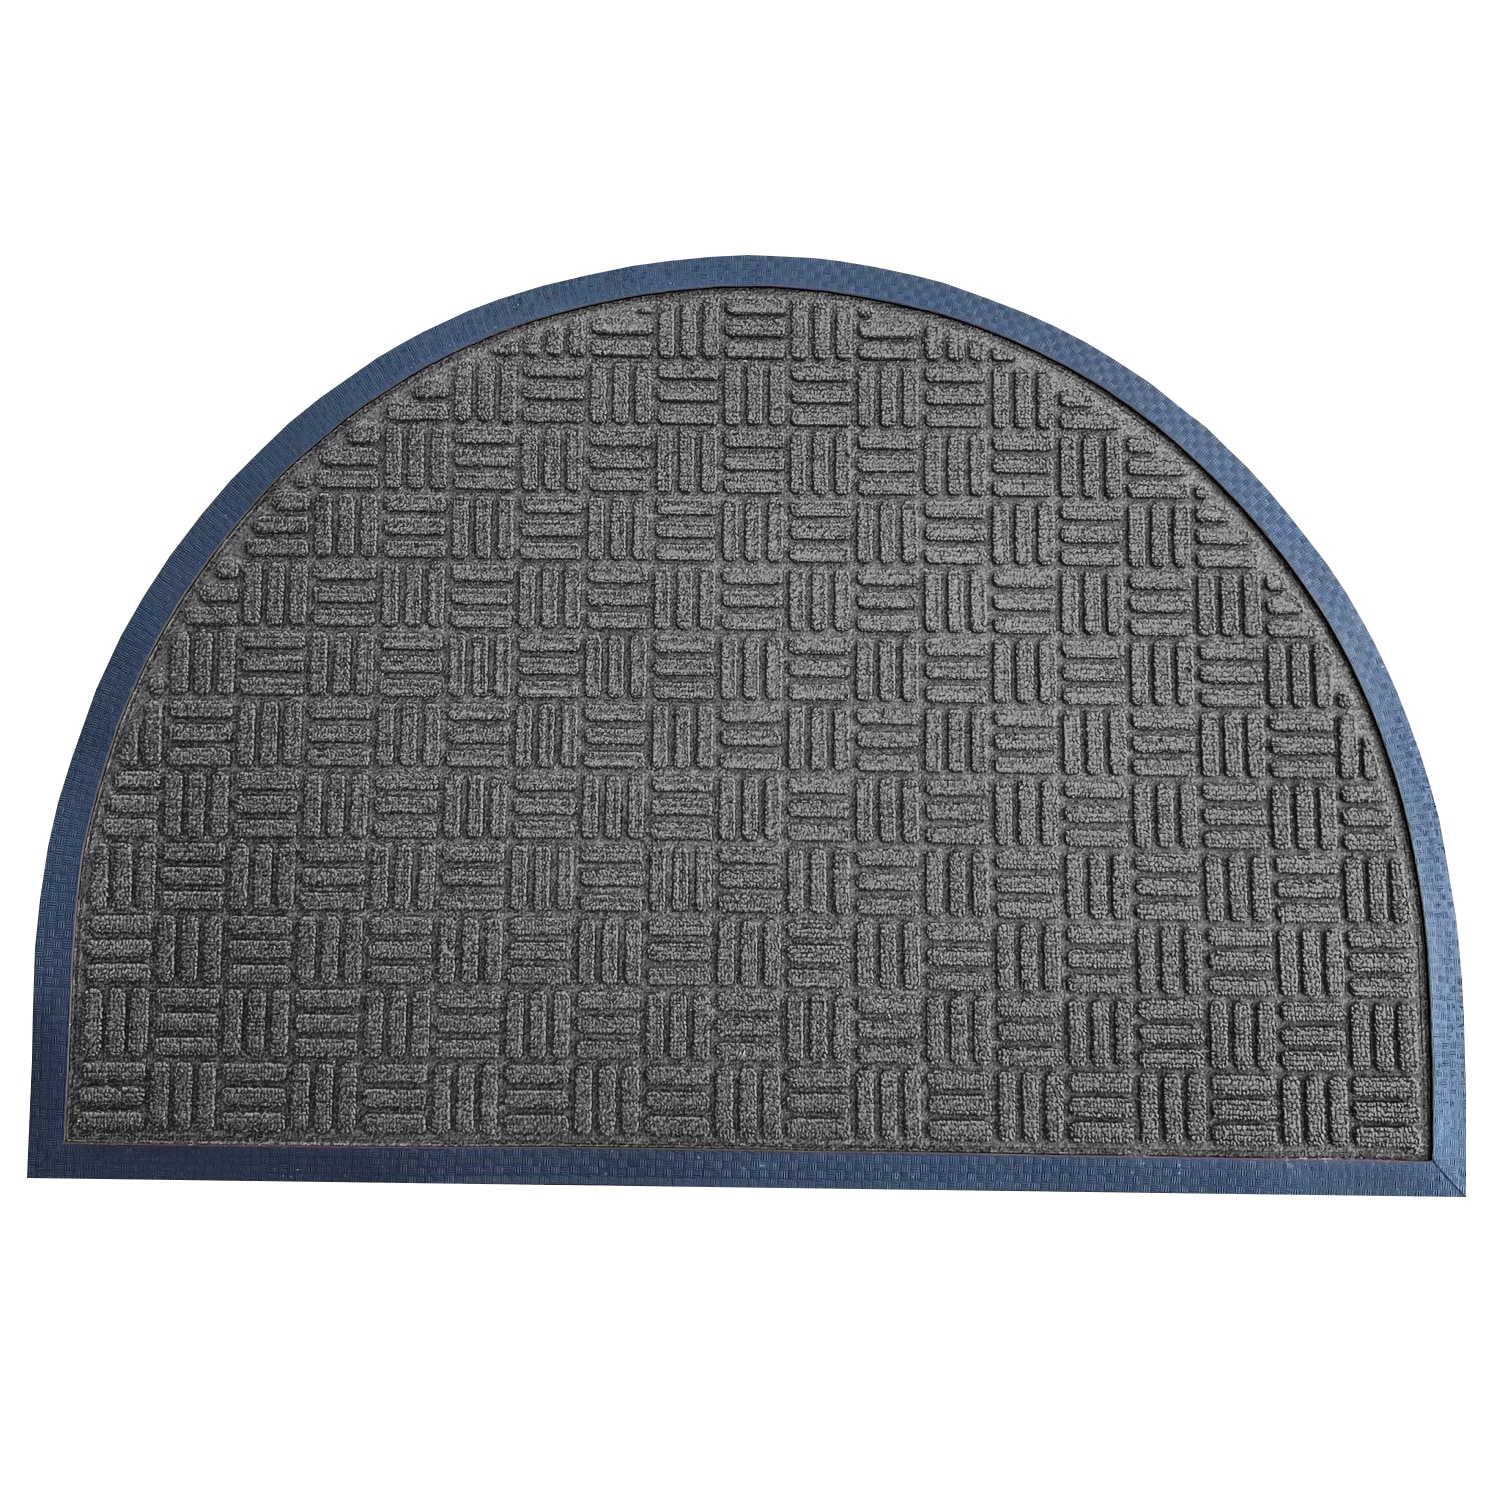 Envelor 2-ft x 3-ft Grey Half-Round Indoor or Outdoor Decorative Door Mat in Gray | PP-71506-GE-M